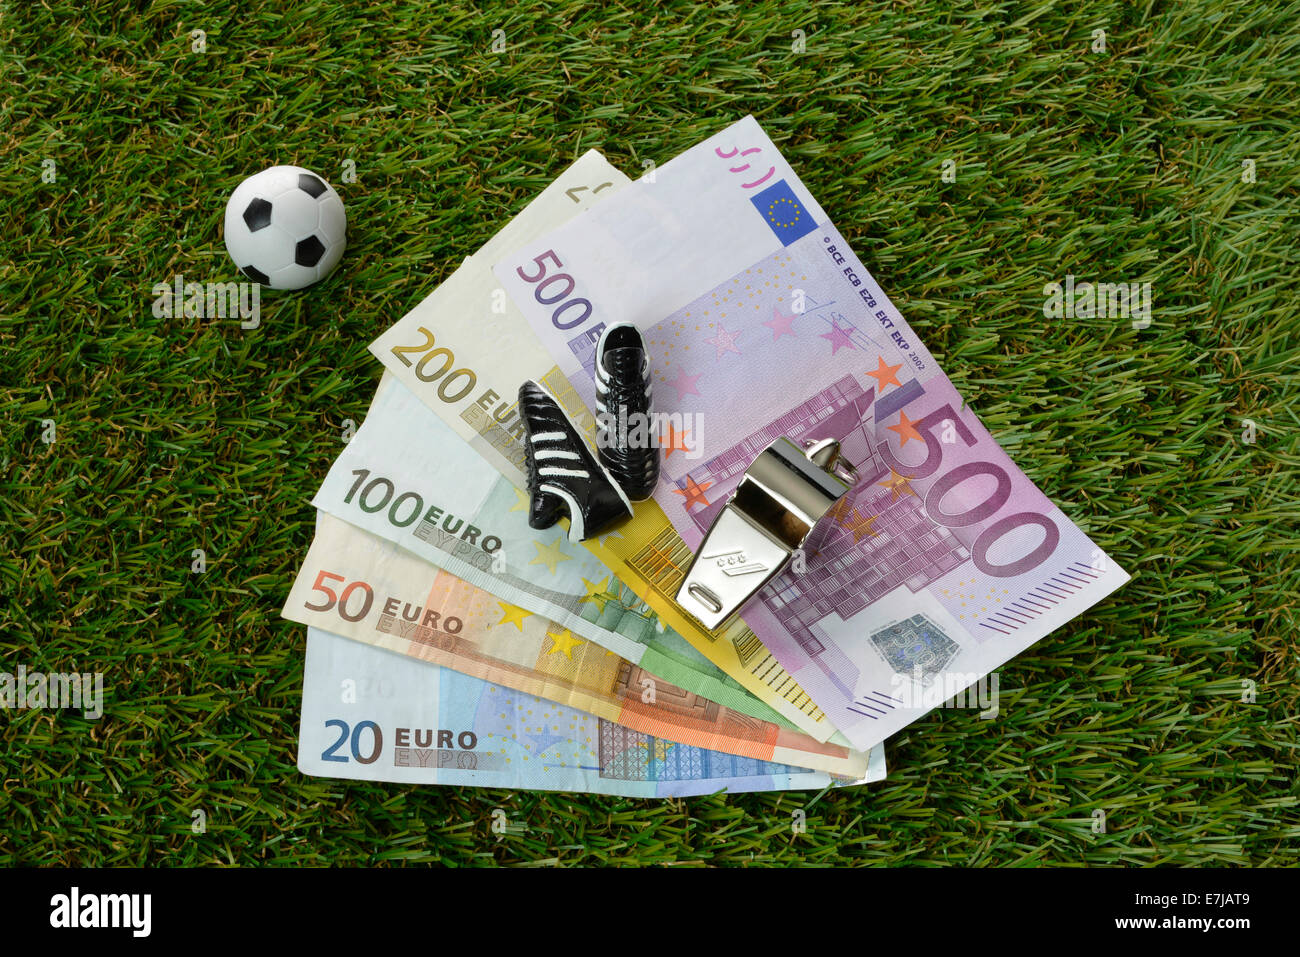 Les projets de l'euro, football, chaussures de football, arbitre sifflet Banque D'Images